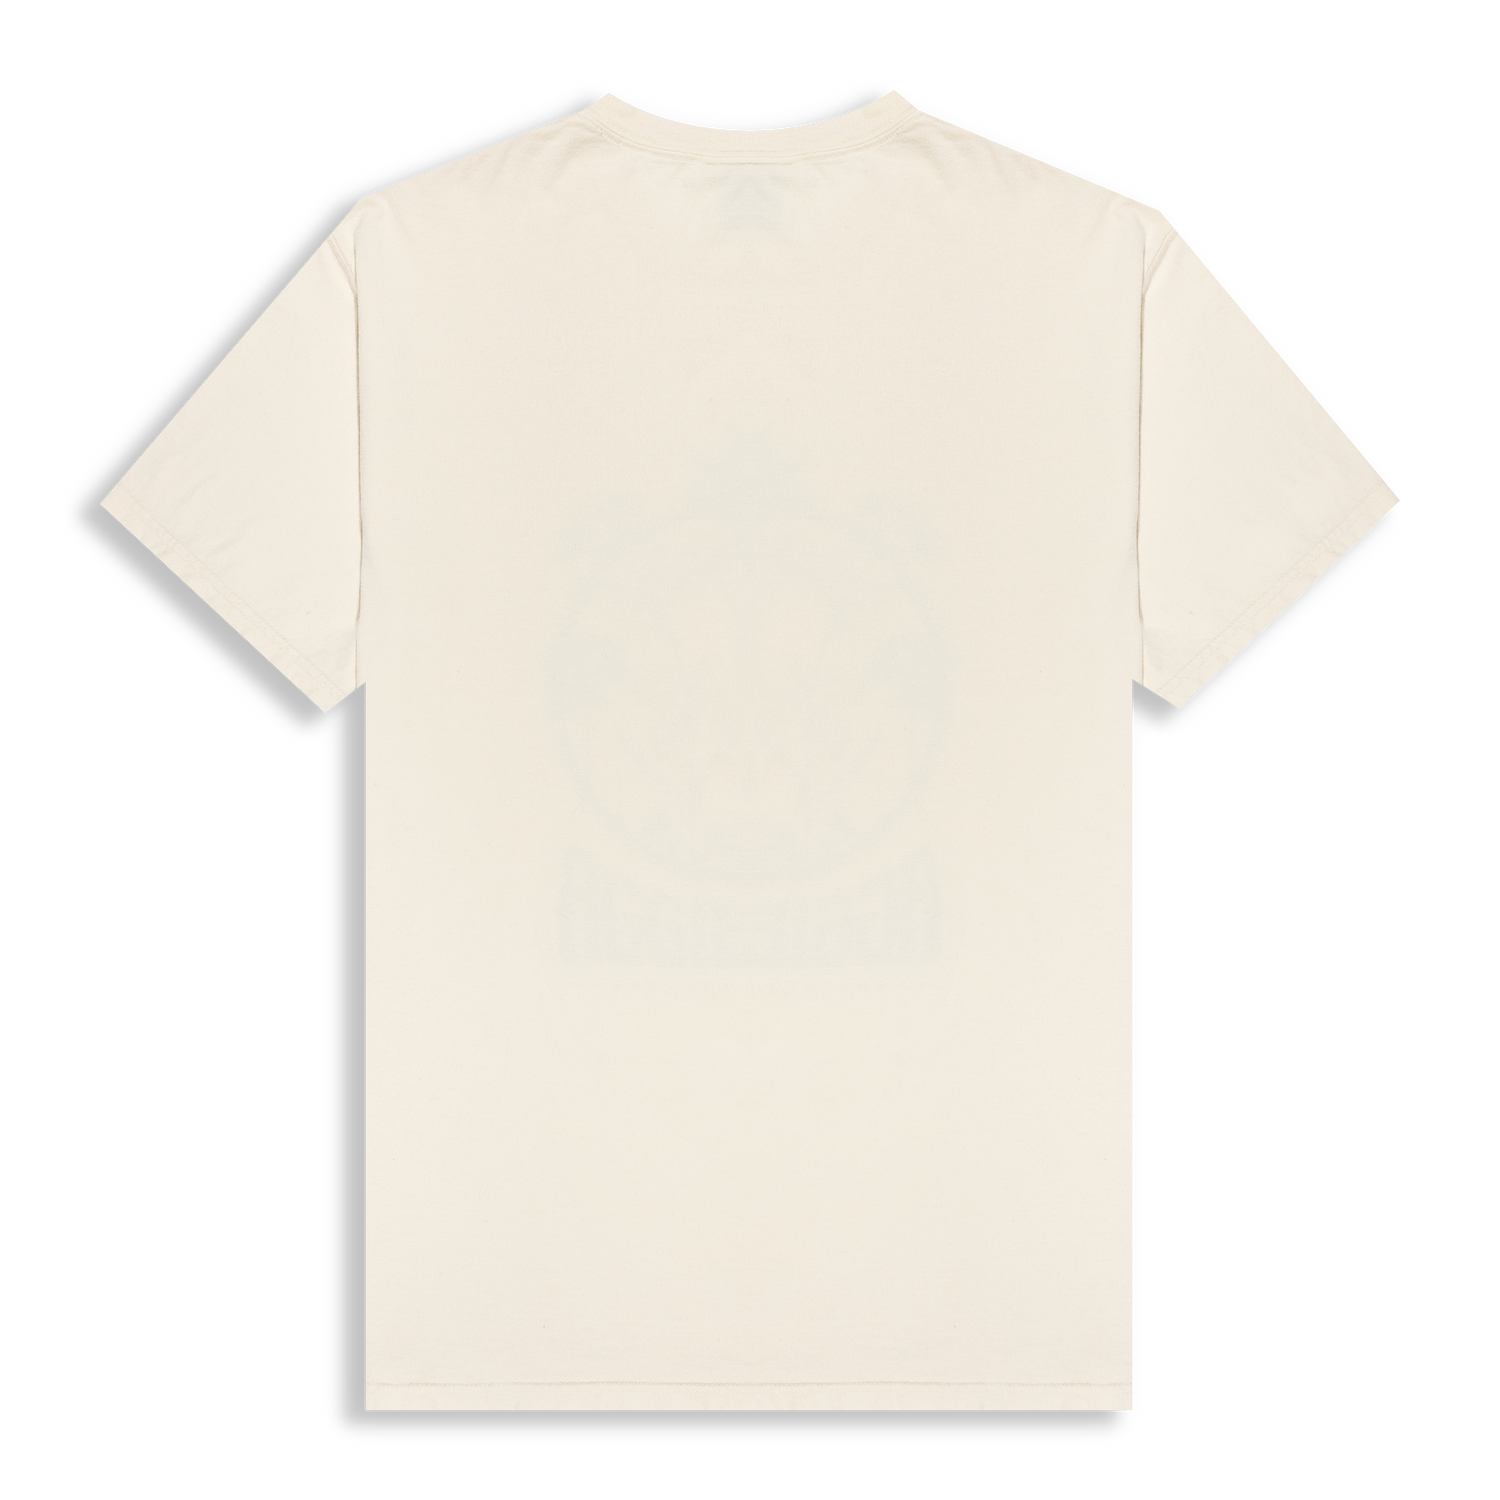 Aggieland Floral Circle Parchment T-Shirt